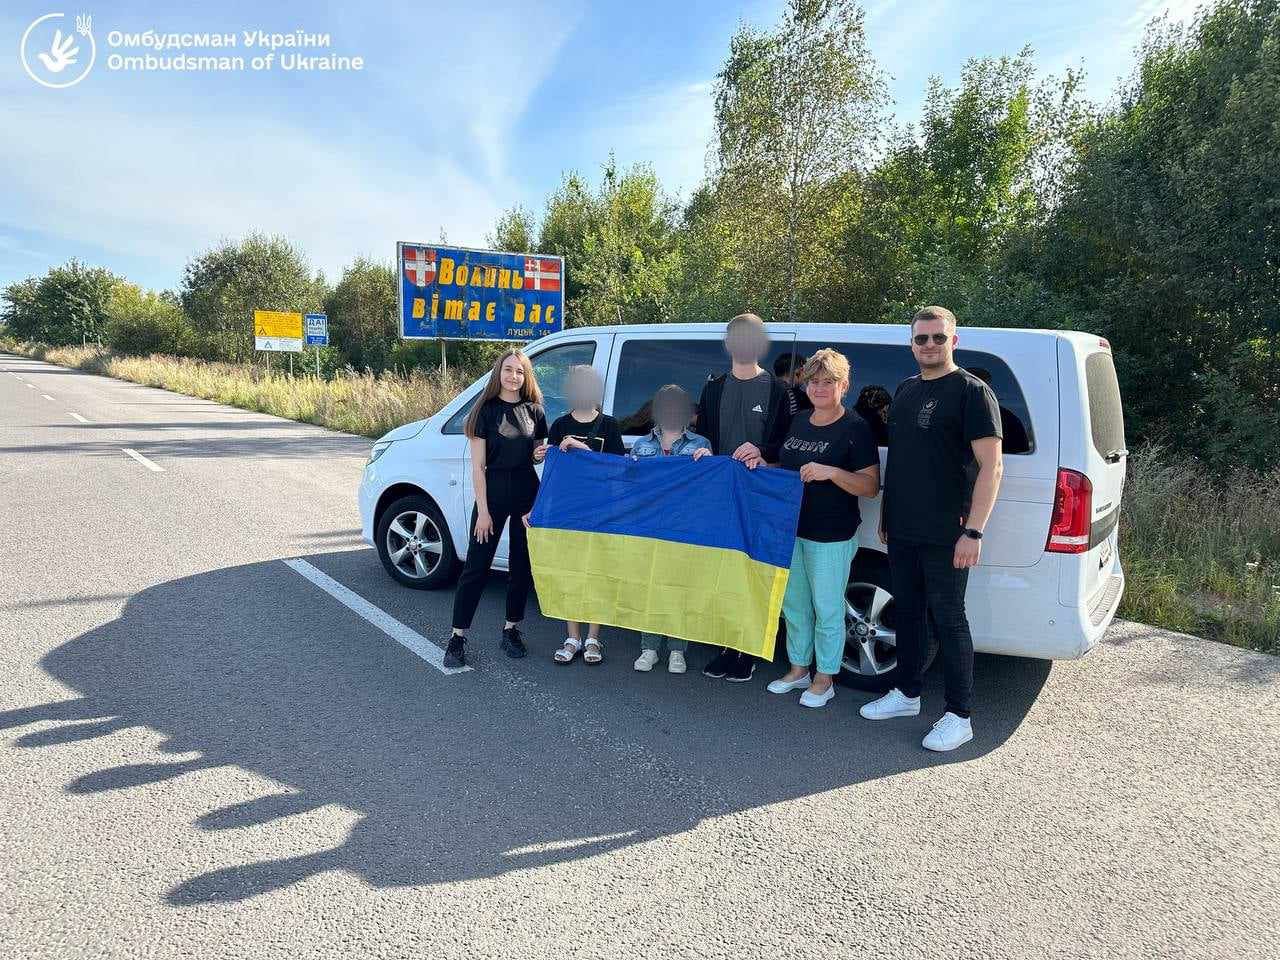 Трьох дітей повернуто з рф та ТОТ до України - омбудсман, фото